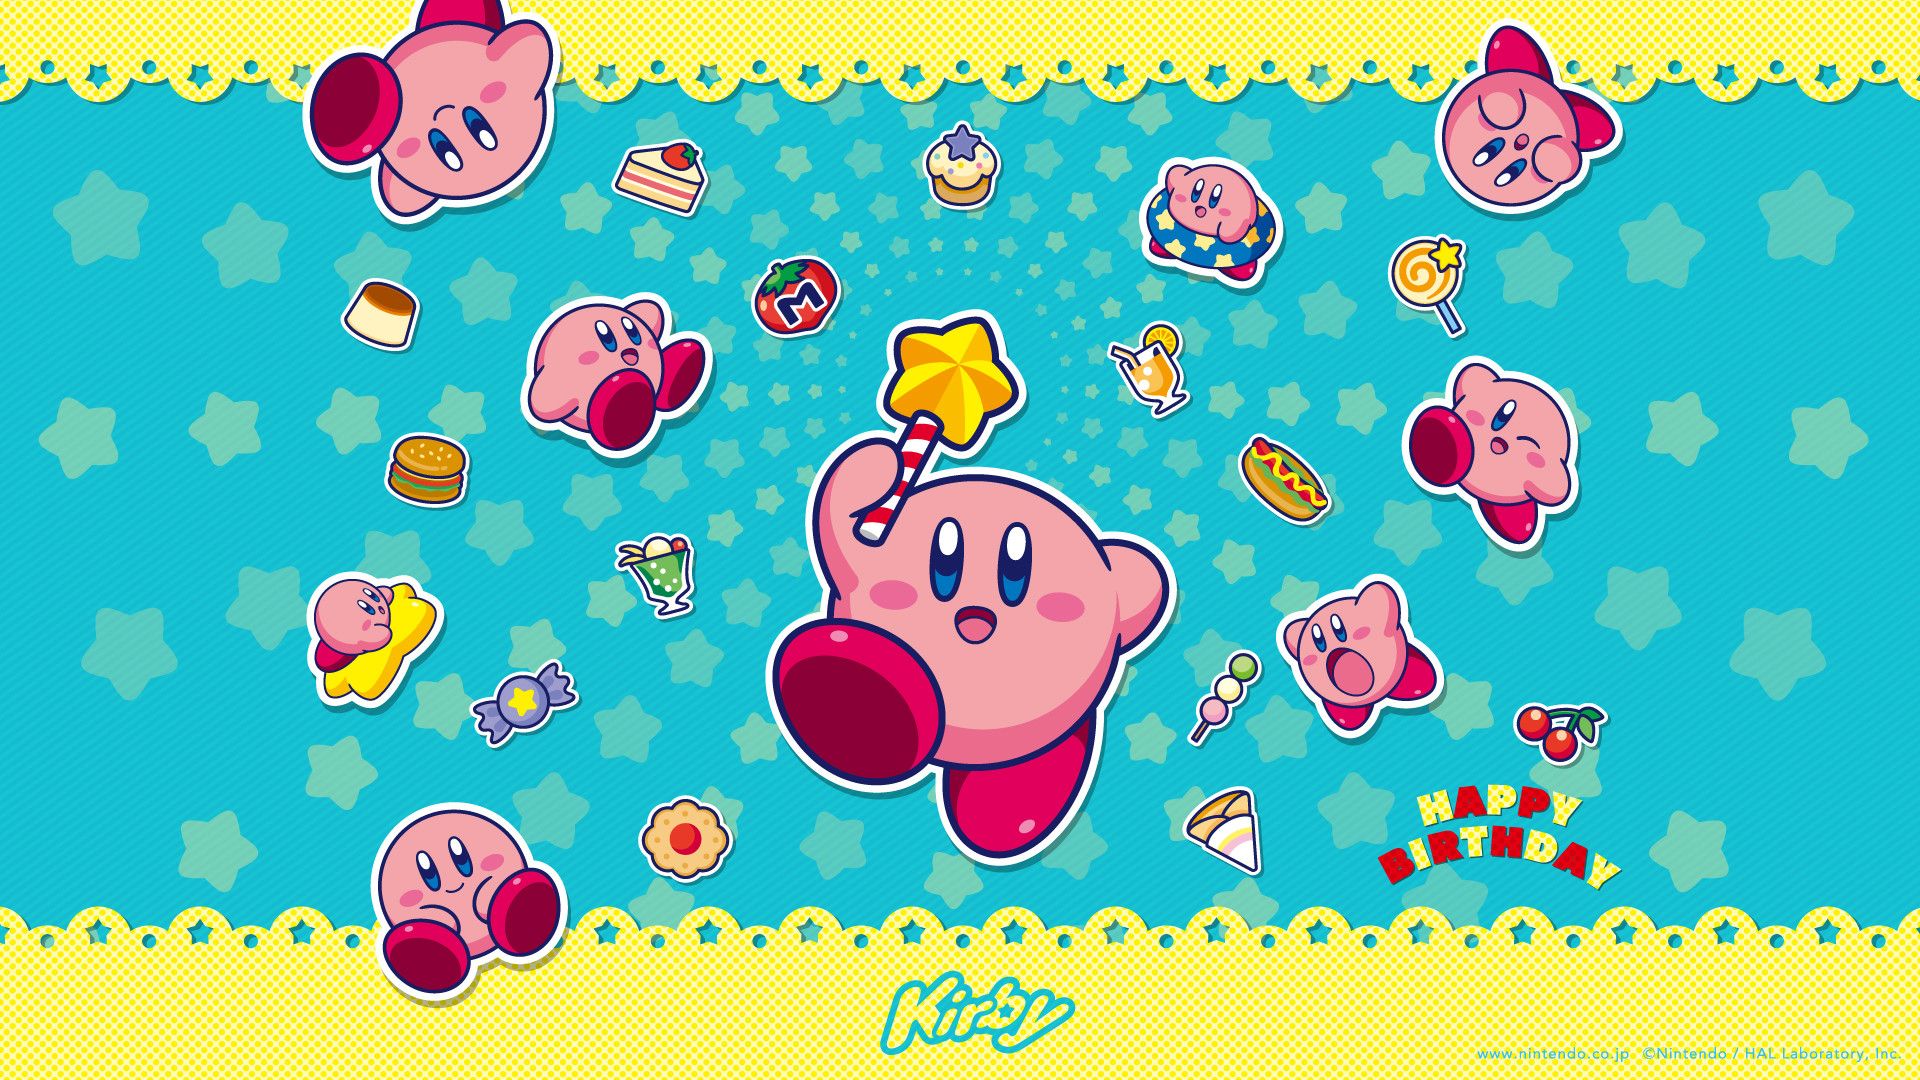 Xem hình nền Kirby sẽ khiến bạn cảm thấy hồi hộp và phấn khích. Những hình ảnh đầy màu sắc và sinh động về nhân vật này sẽ khiến bạn không thể rời mắt.